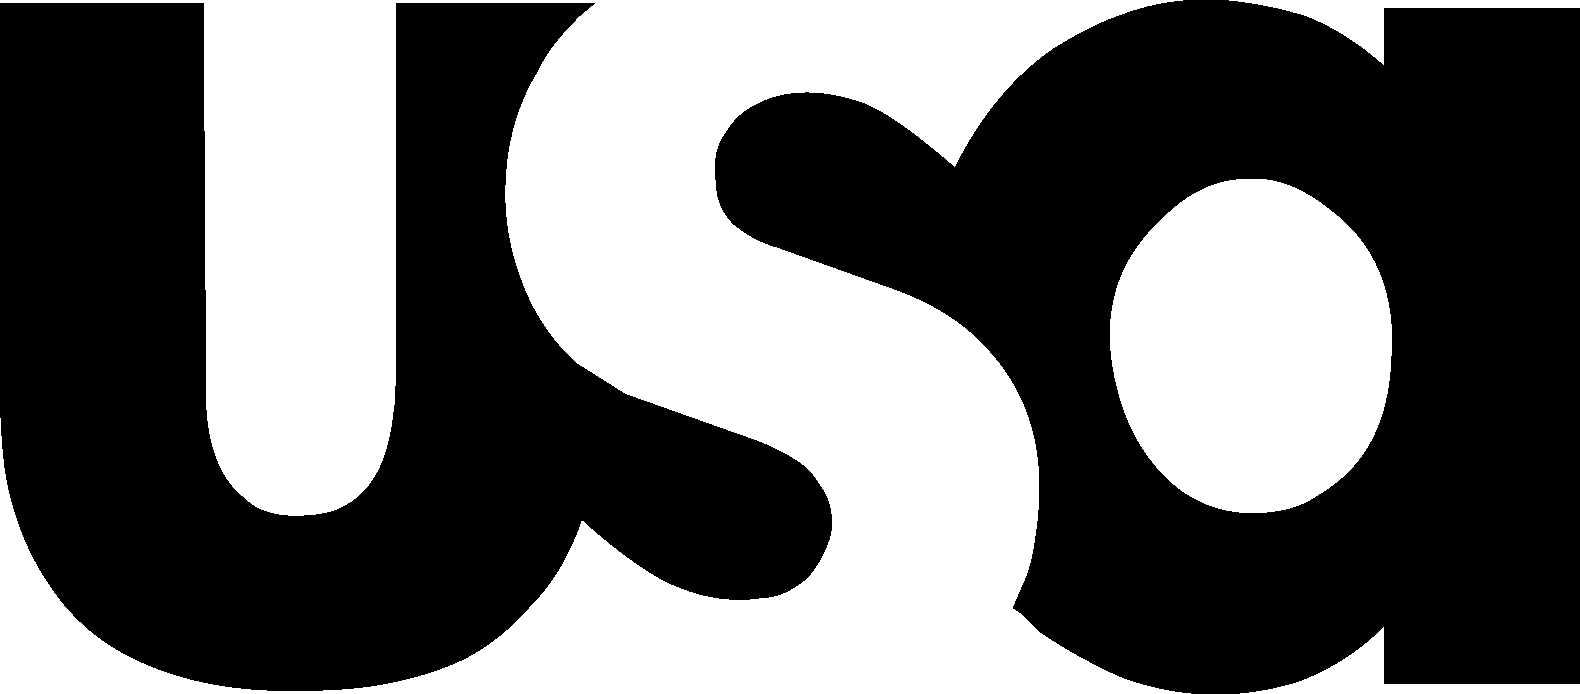 USA Network Logo [usanetwork.com] png